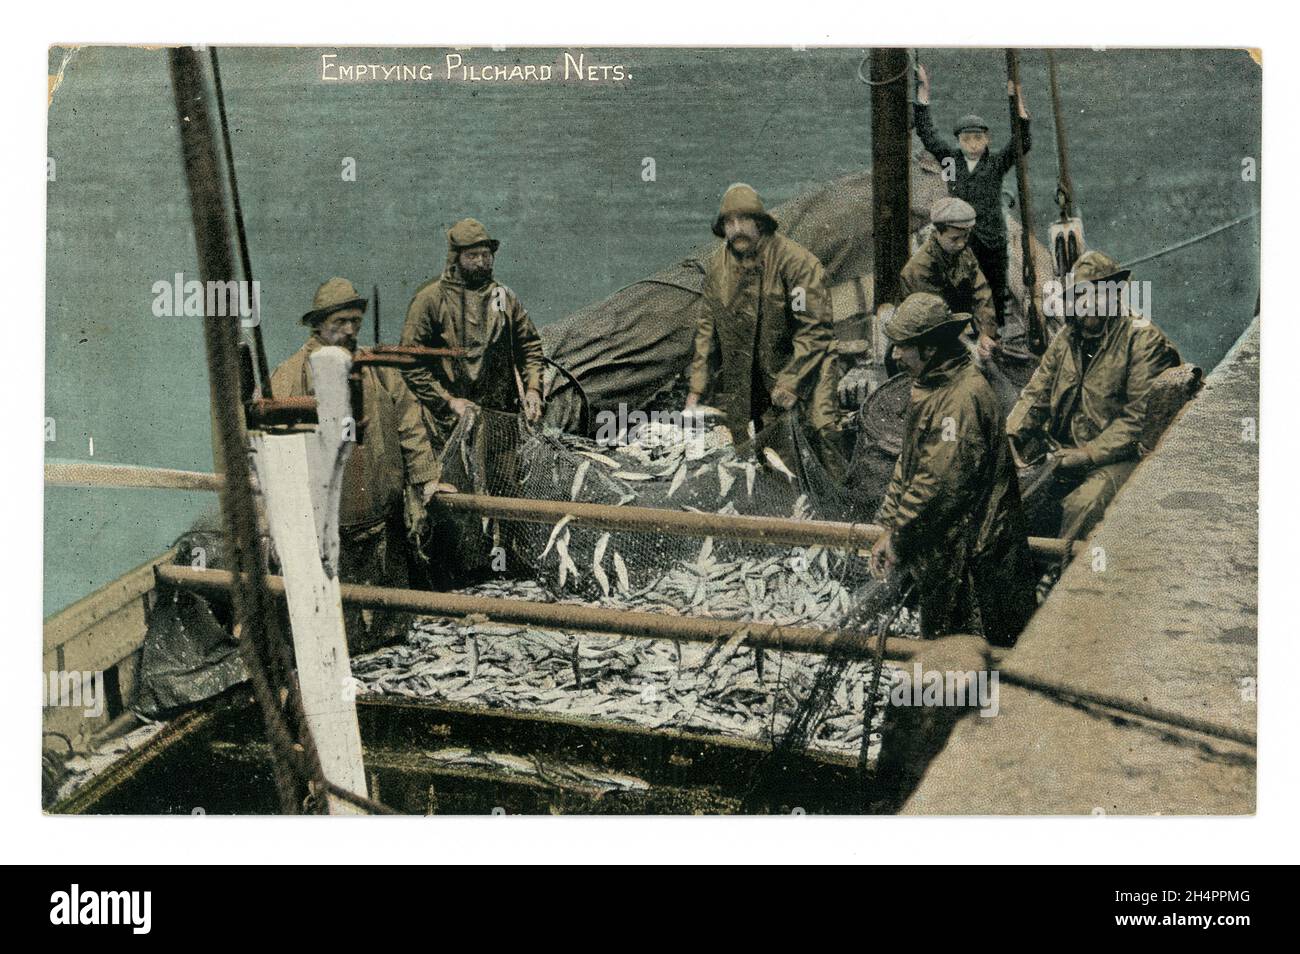 Originale cartolina colorata dei primi del 1900 di pescatori che svuotano i pilchards (sardine) dalle reti, (possibilmente reti della senna) serie di Argall, circa 1910 - Cornovaglia. Foto Stock